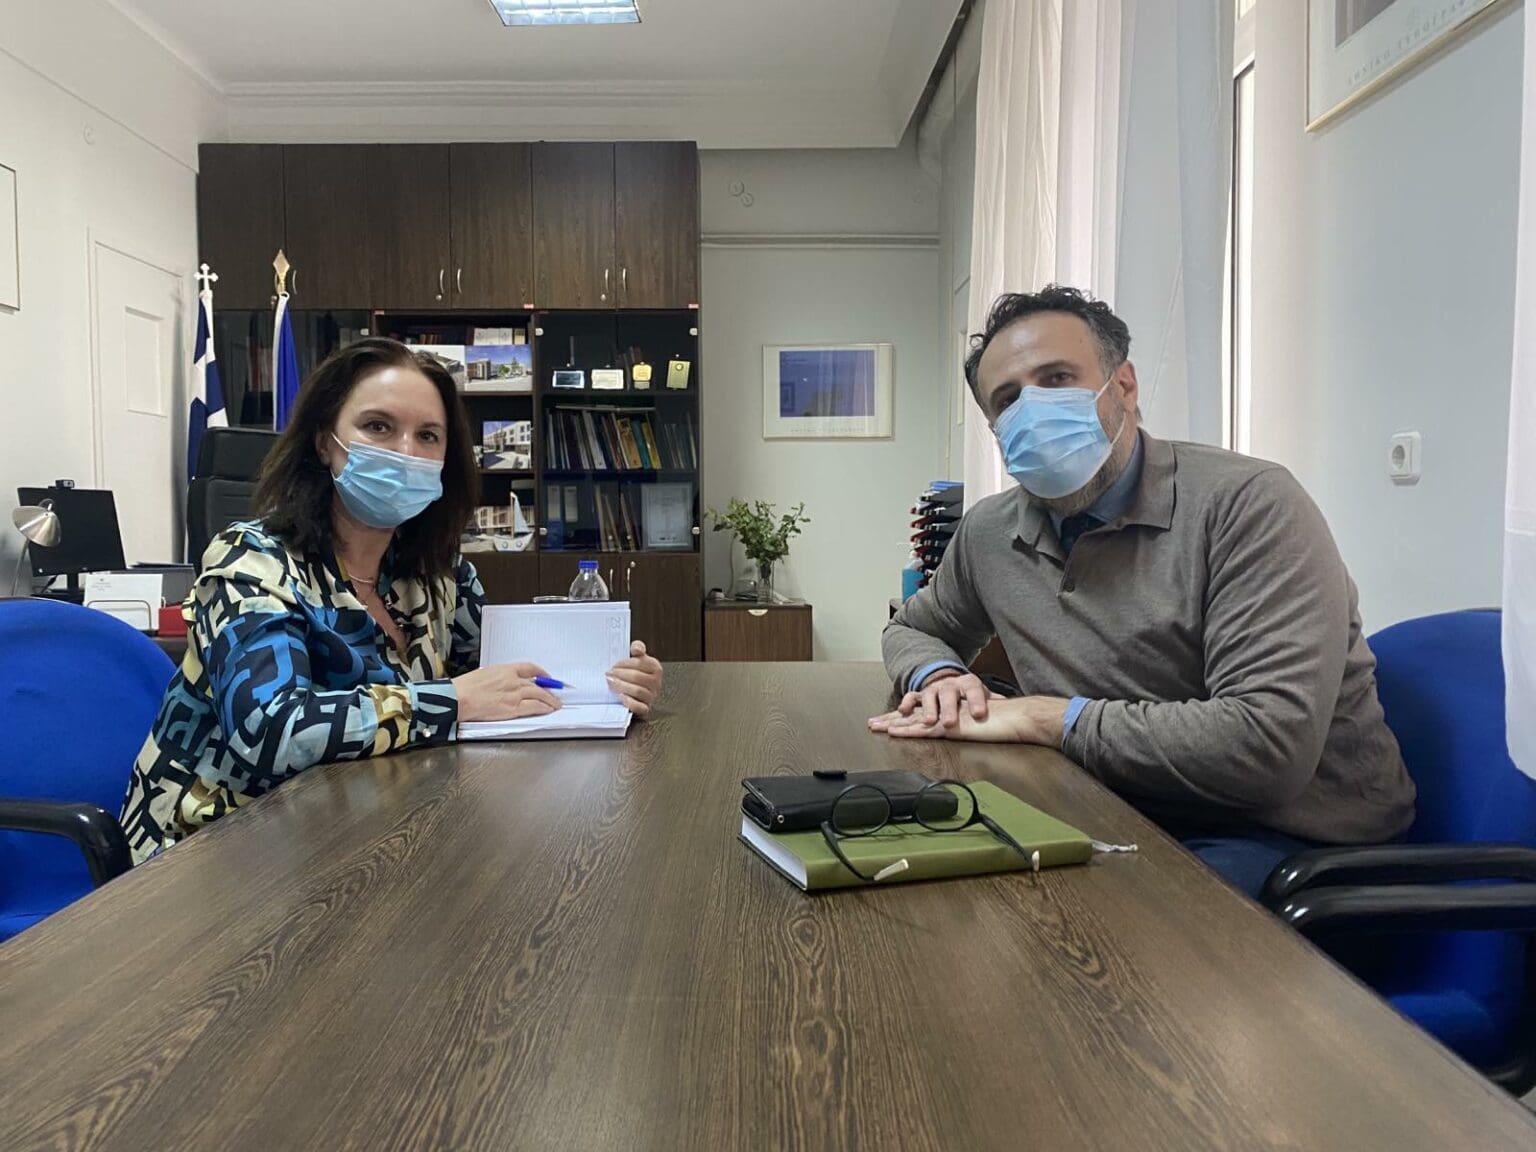 Καλλιόπη Βέττα: Συνάντηση με τον Διοικητή του Νοσοκομείου Κοζάνης